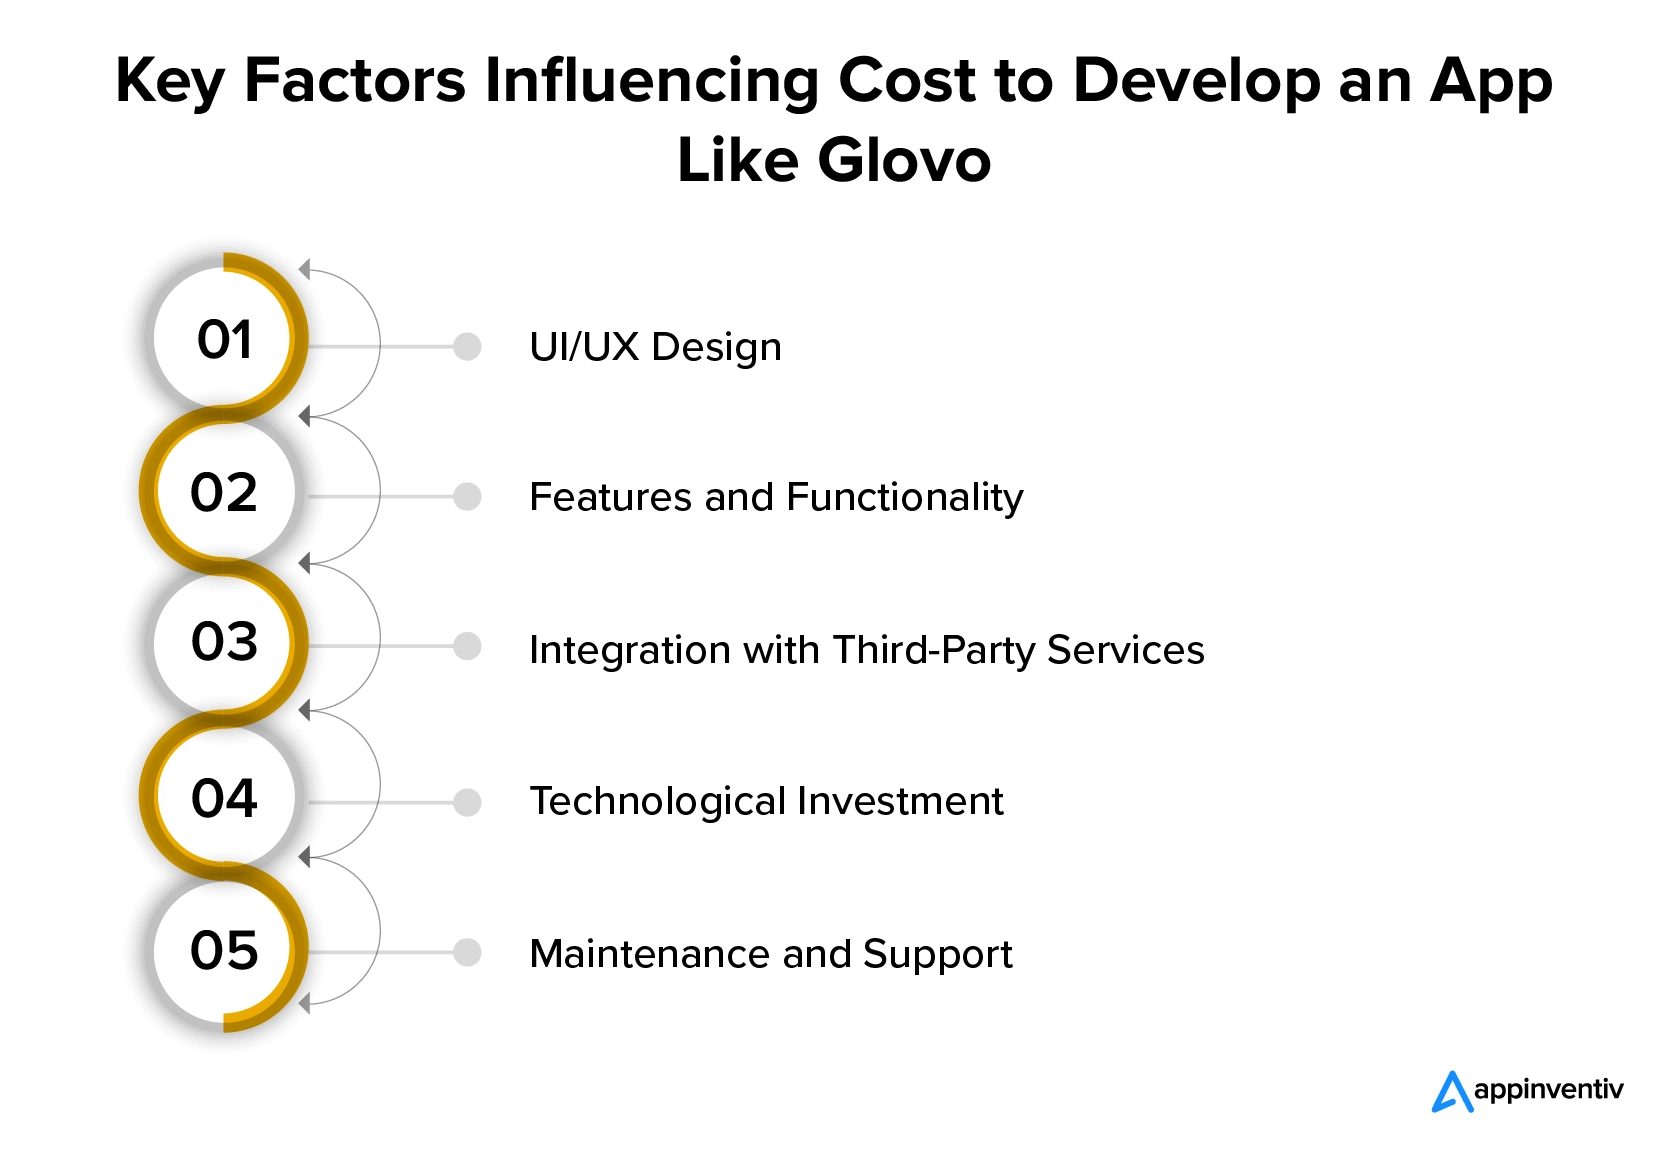 Fatores que influenciam os custos para desenvolver um aplicativo estilo Glovo